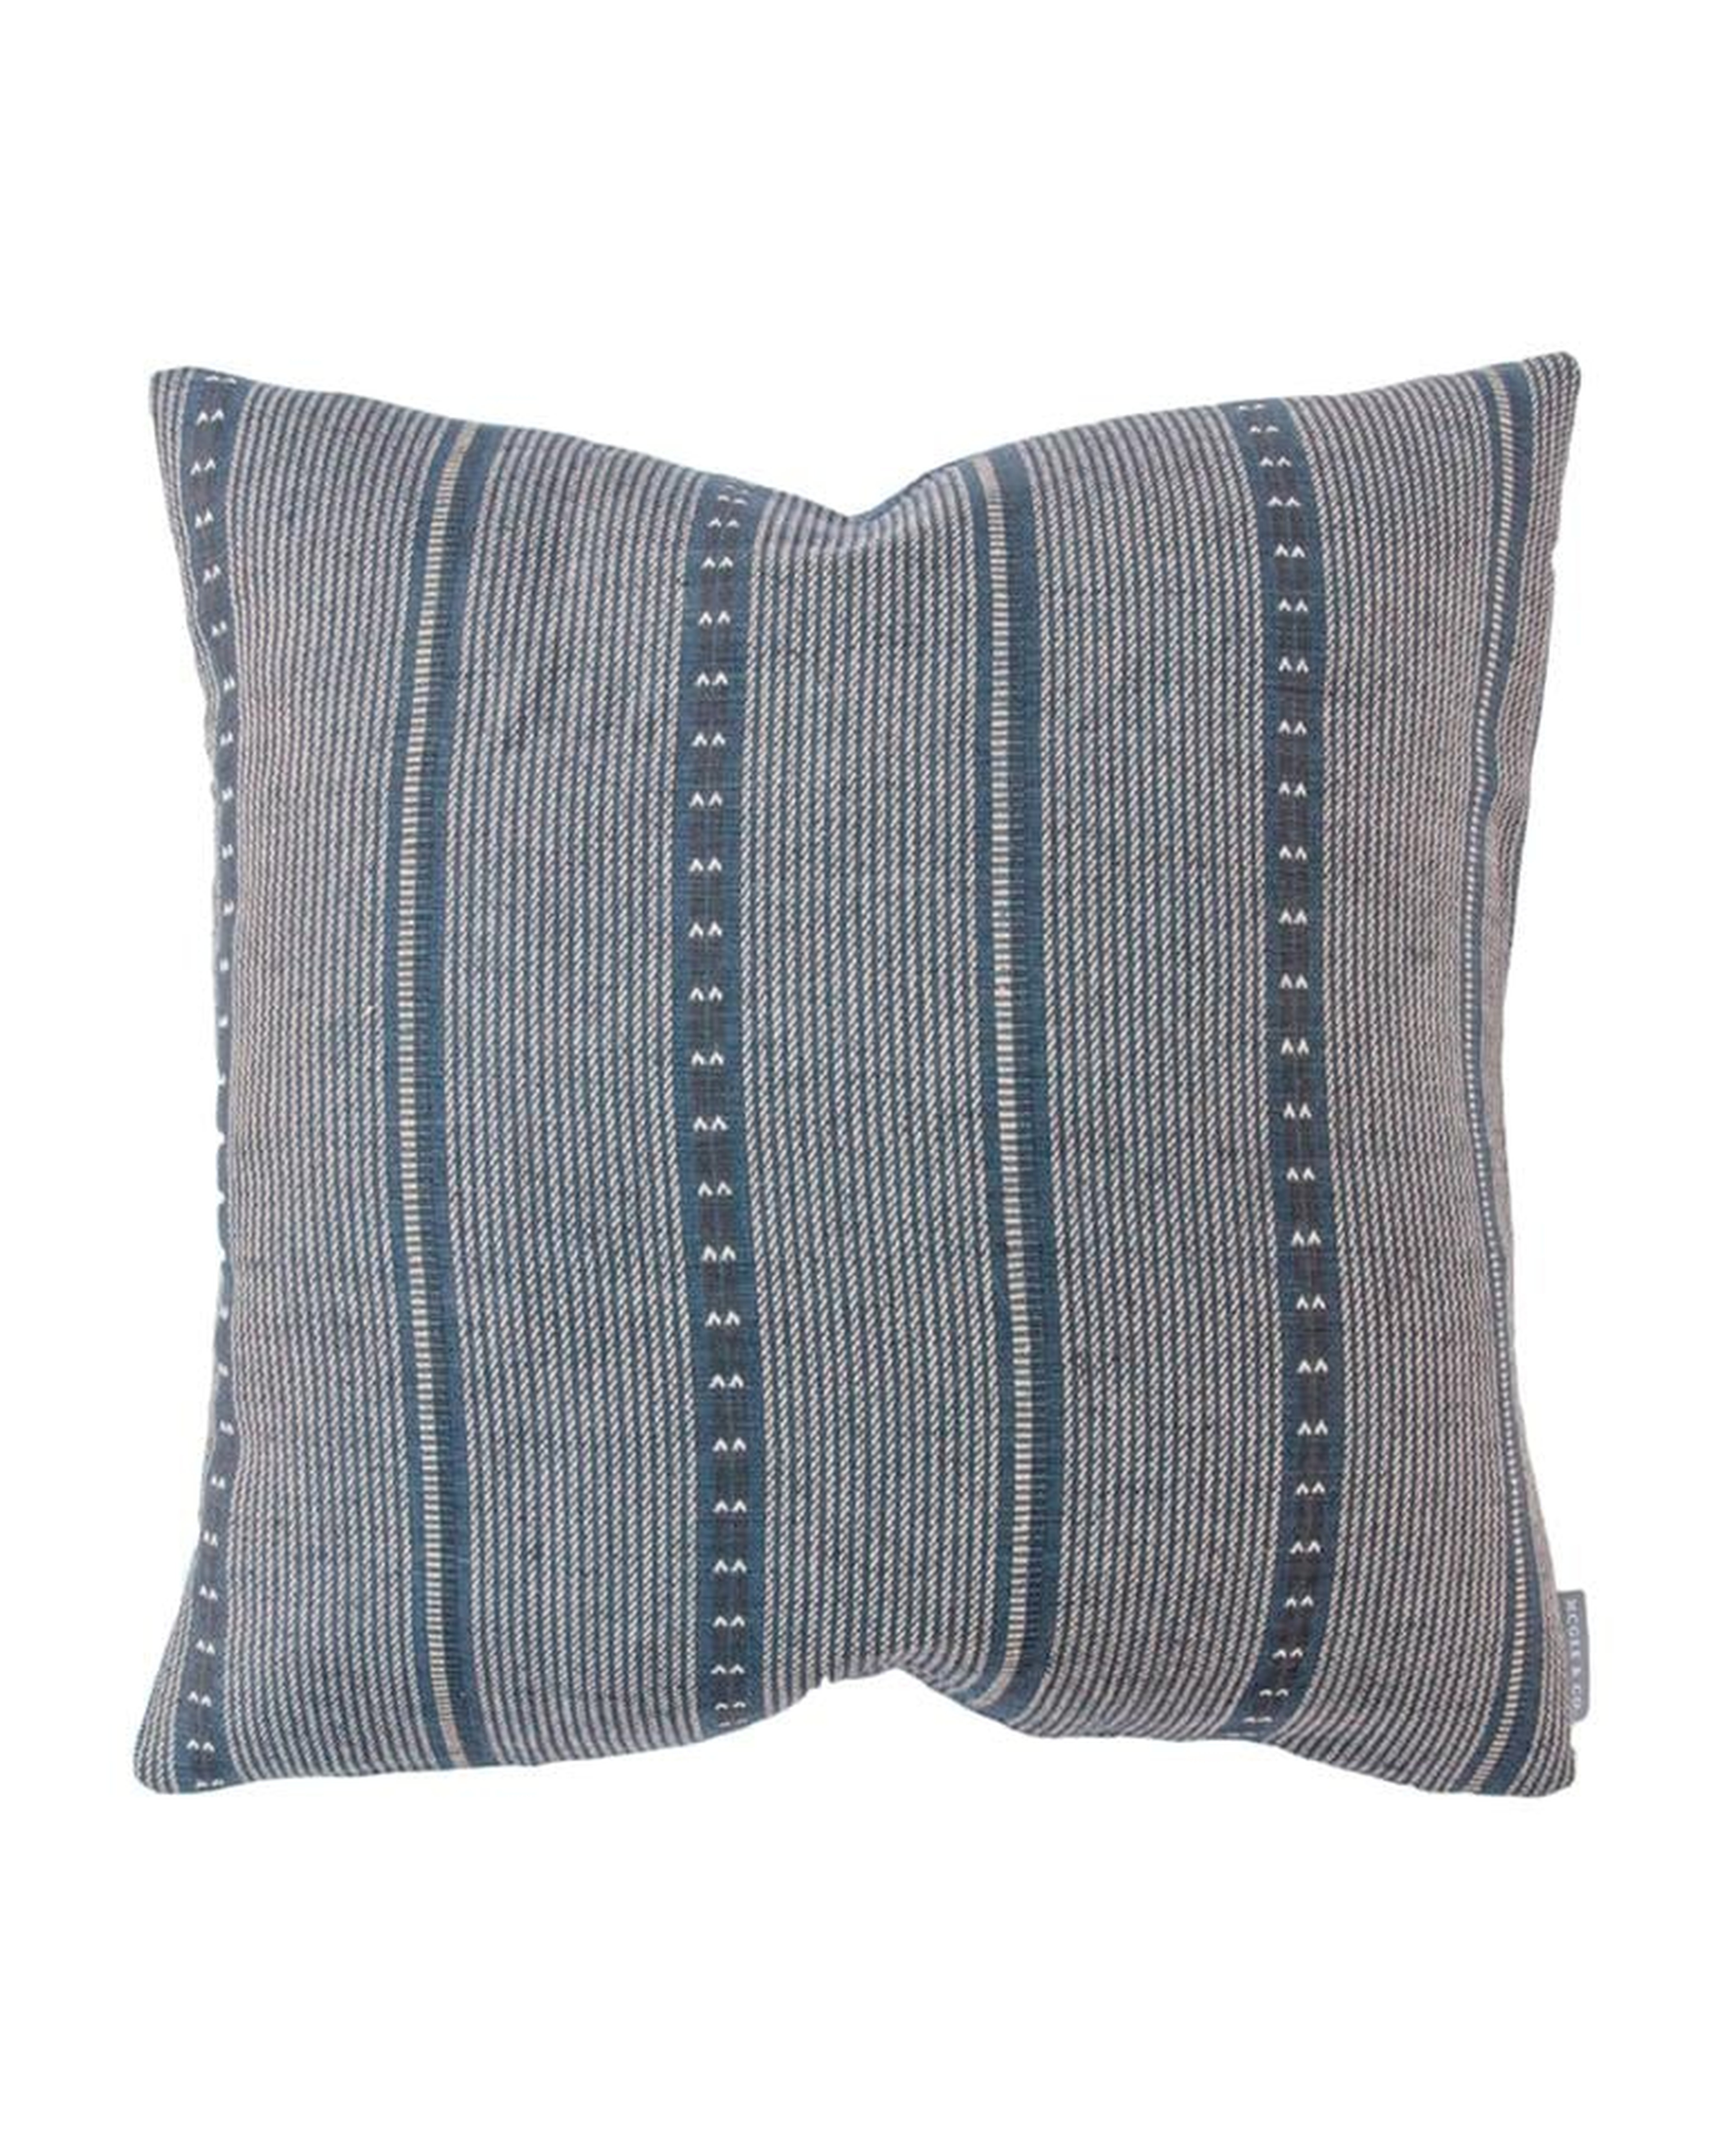 Dorian Pillow Cover, 20"x 20" - McGee & Co.